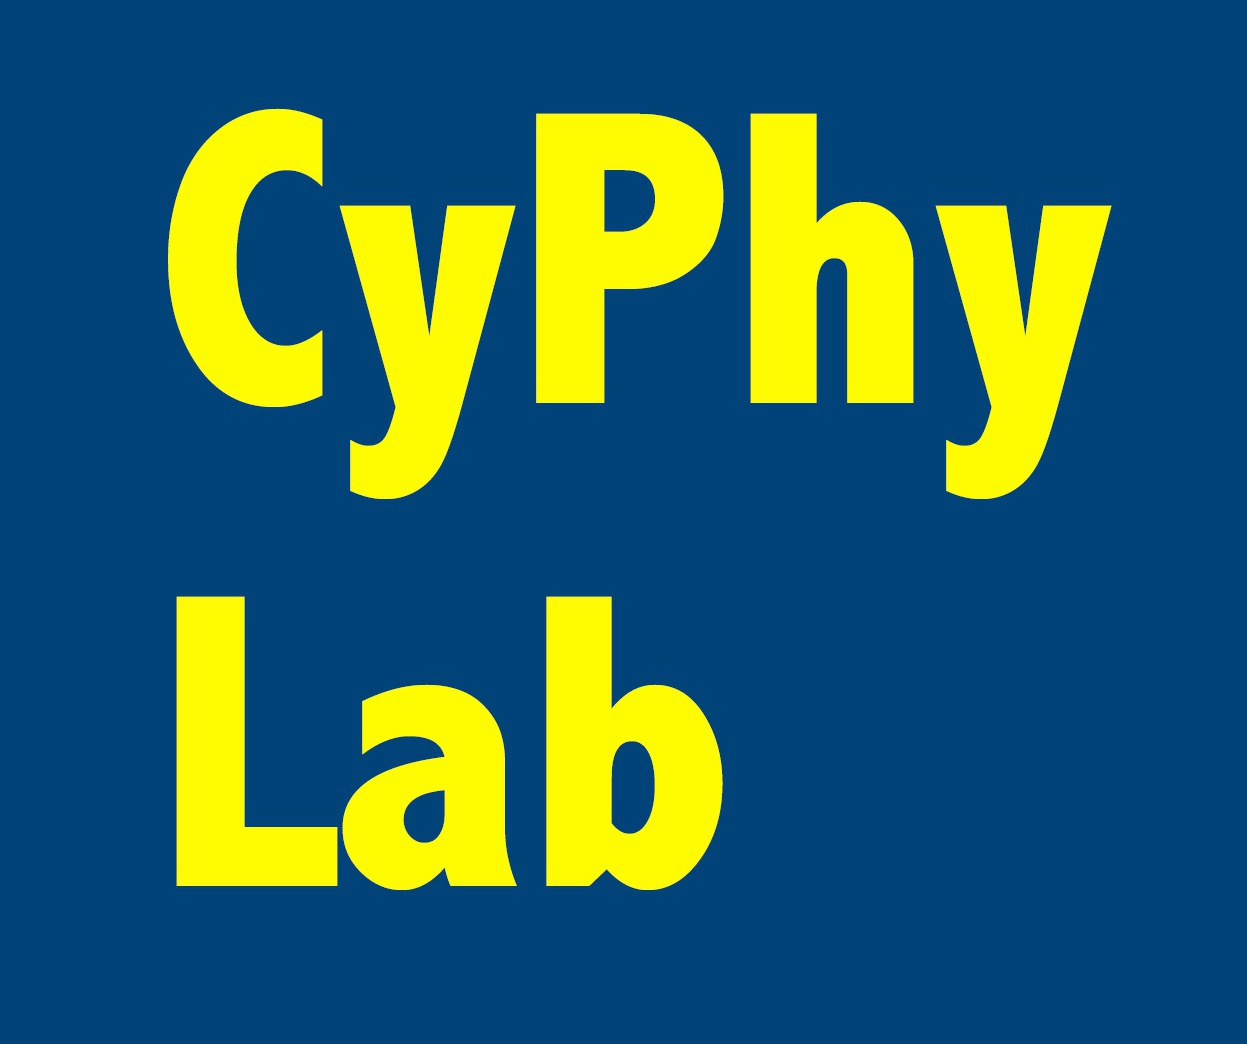 CyPhy Logo